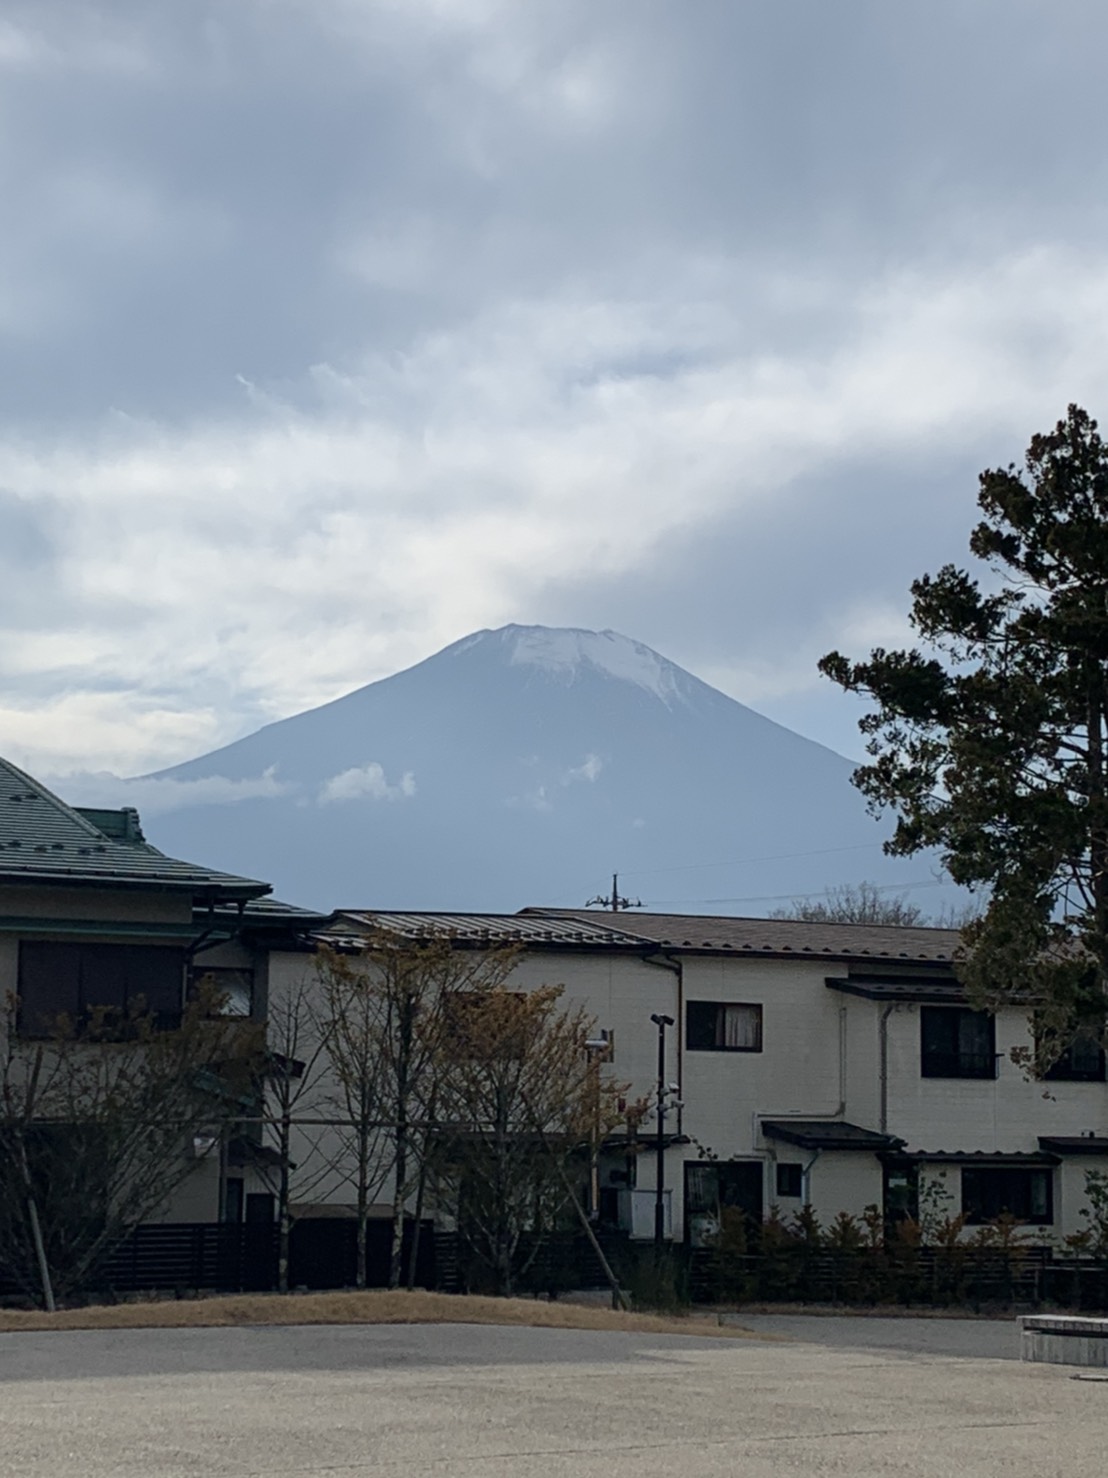 今回は山梨県山名湖に　民宿外壁内装工事の打ち合わせ‼️現場から見える富士山〜🏔‼️大阪から車で6時間かなり遠かったです‼️笑笑　現場からの富士山🏔凄く綺麗でした‼️